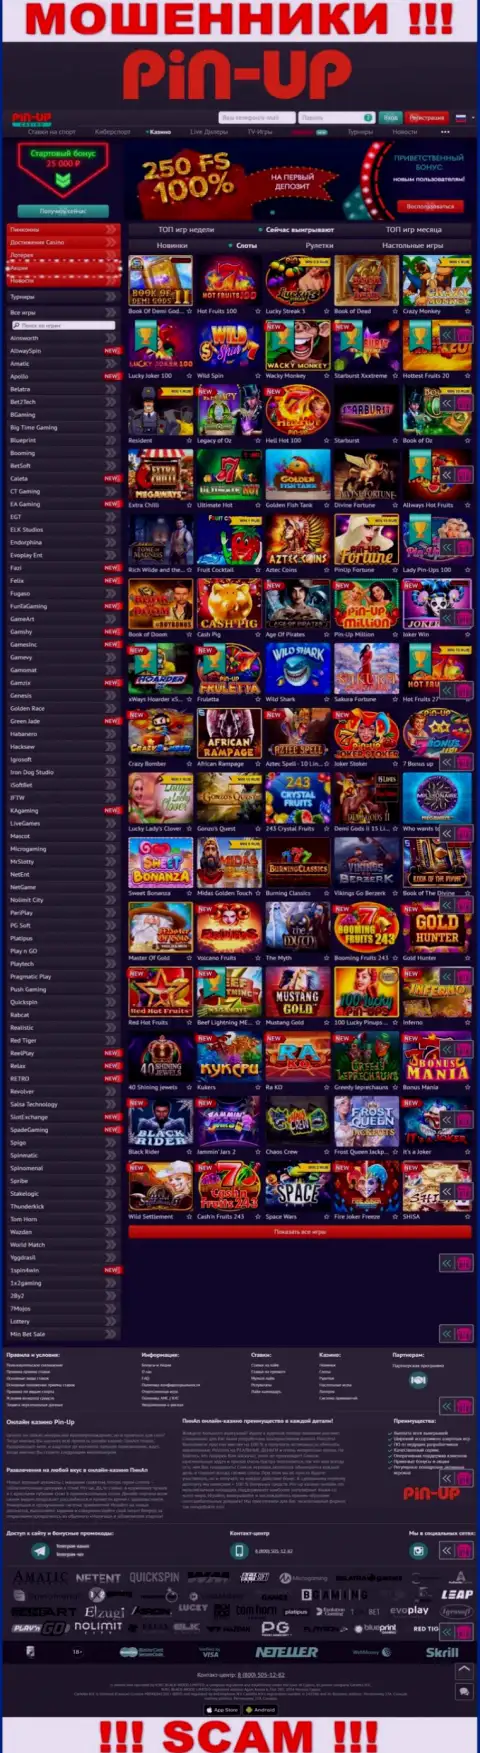 Pin-Up Casino - это официальный сайт мошенников Пин-Ап Казино